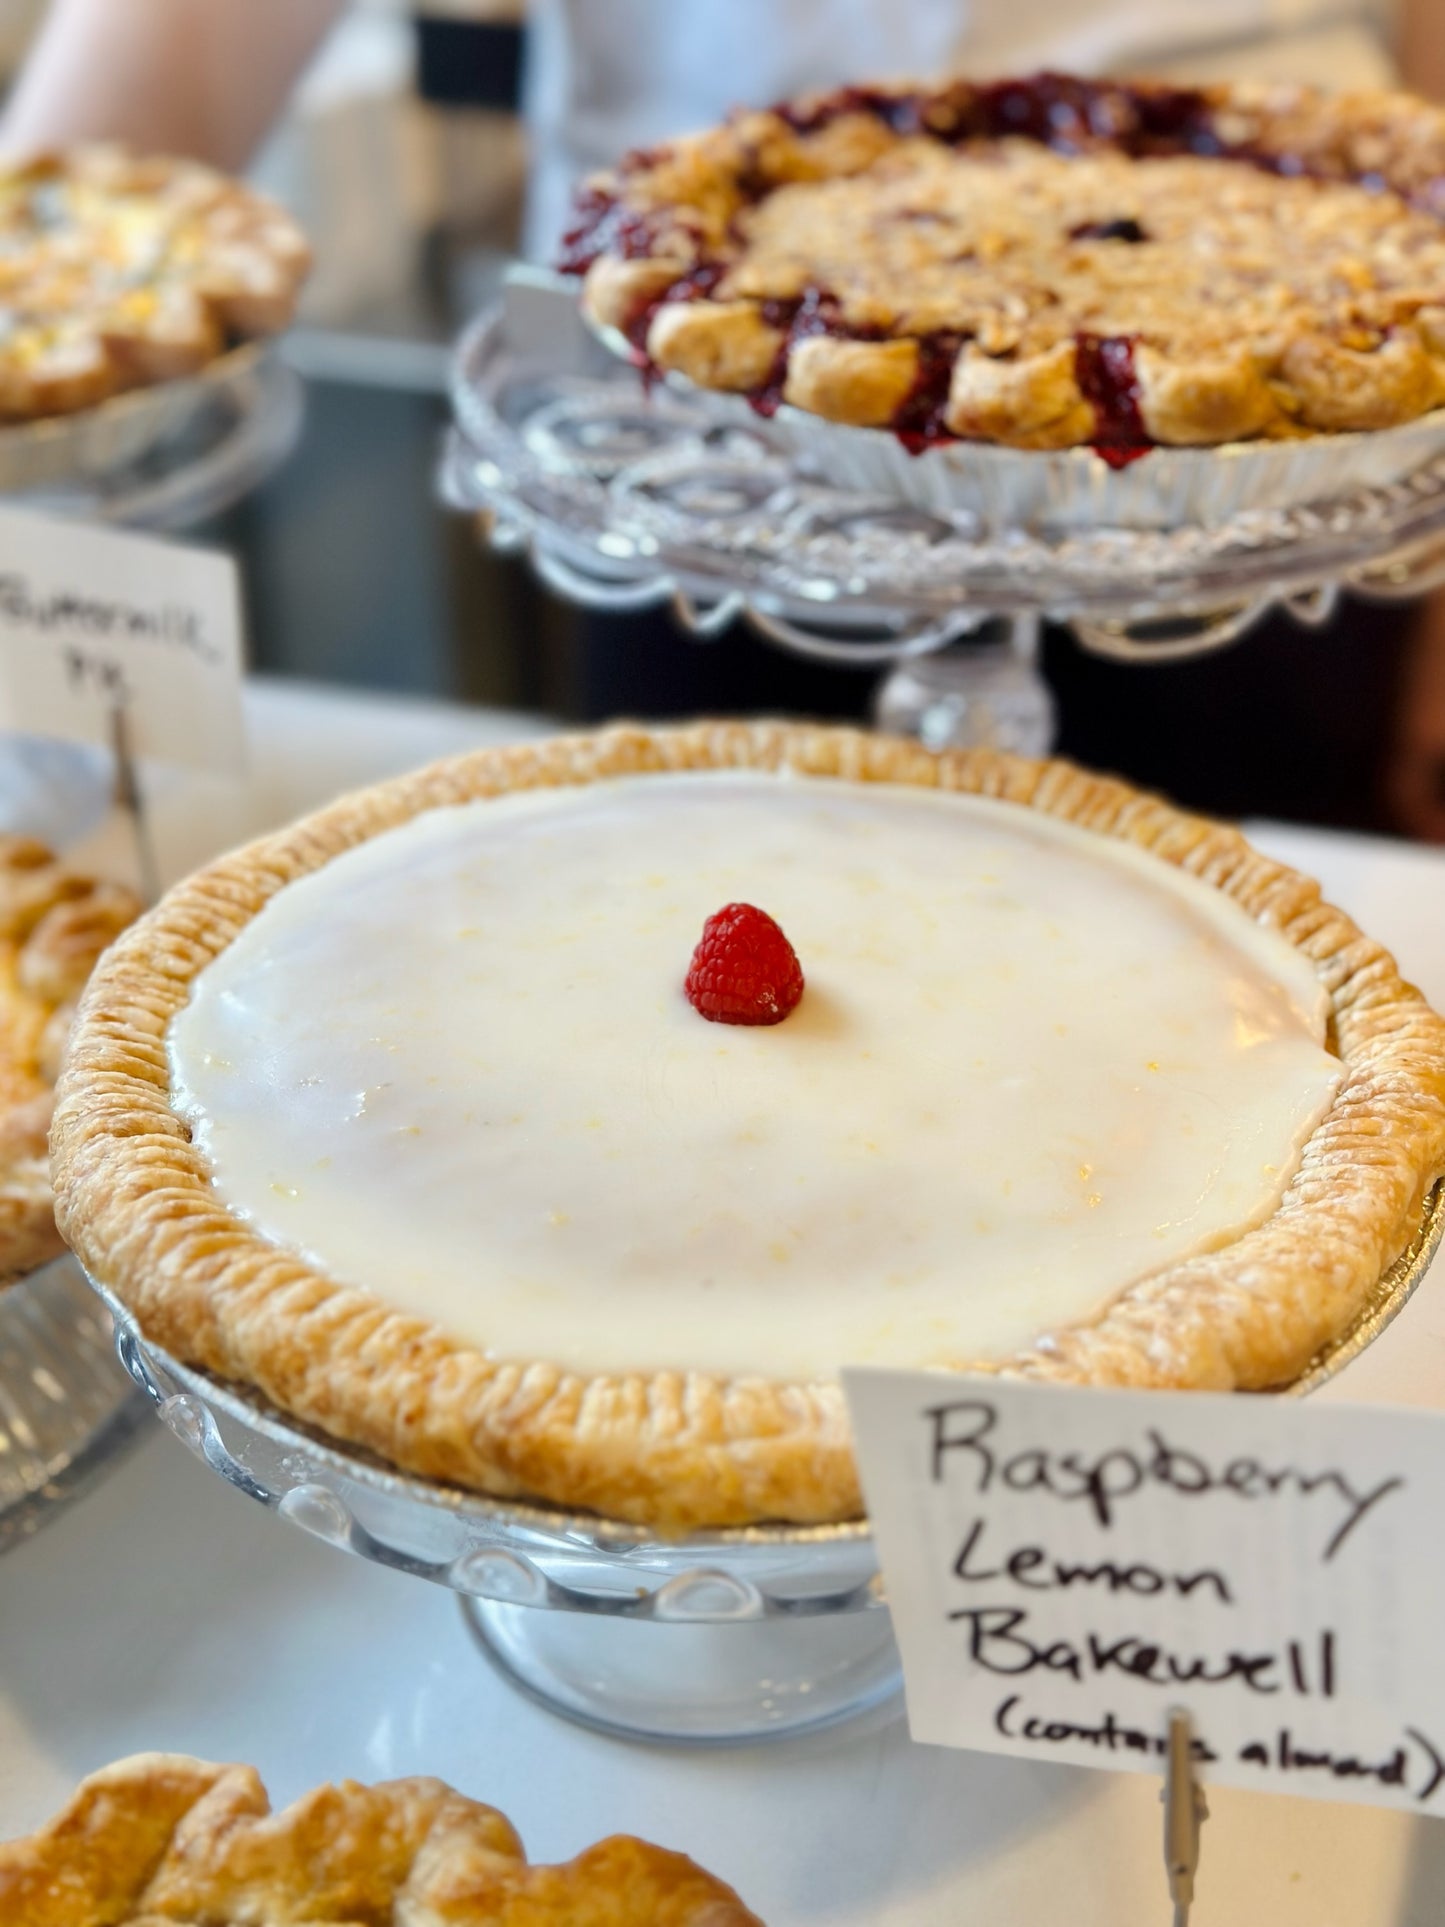 Pie - Raspberry Lemon Bakewell Tart - 10”